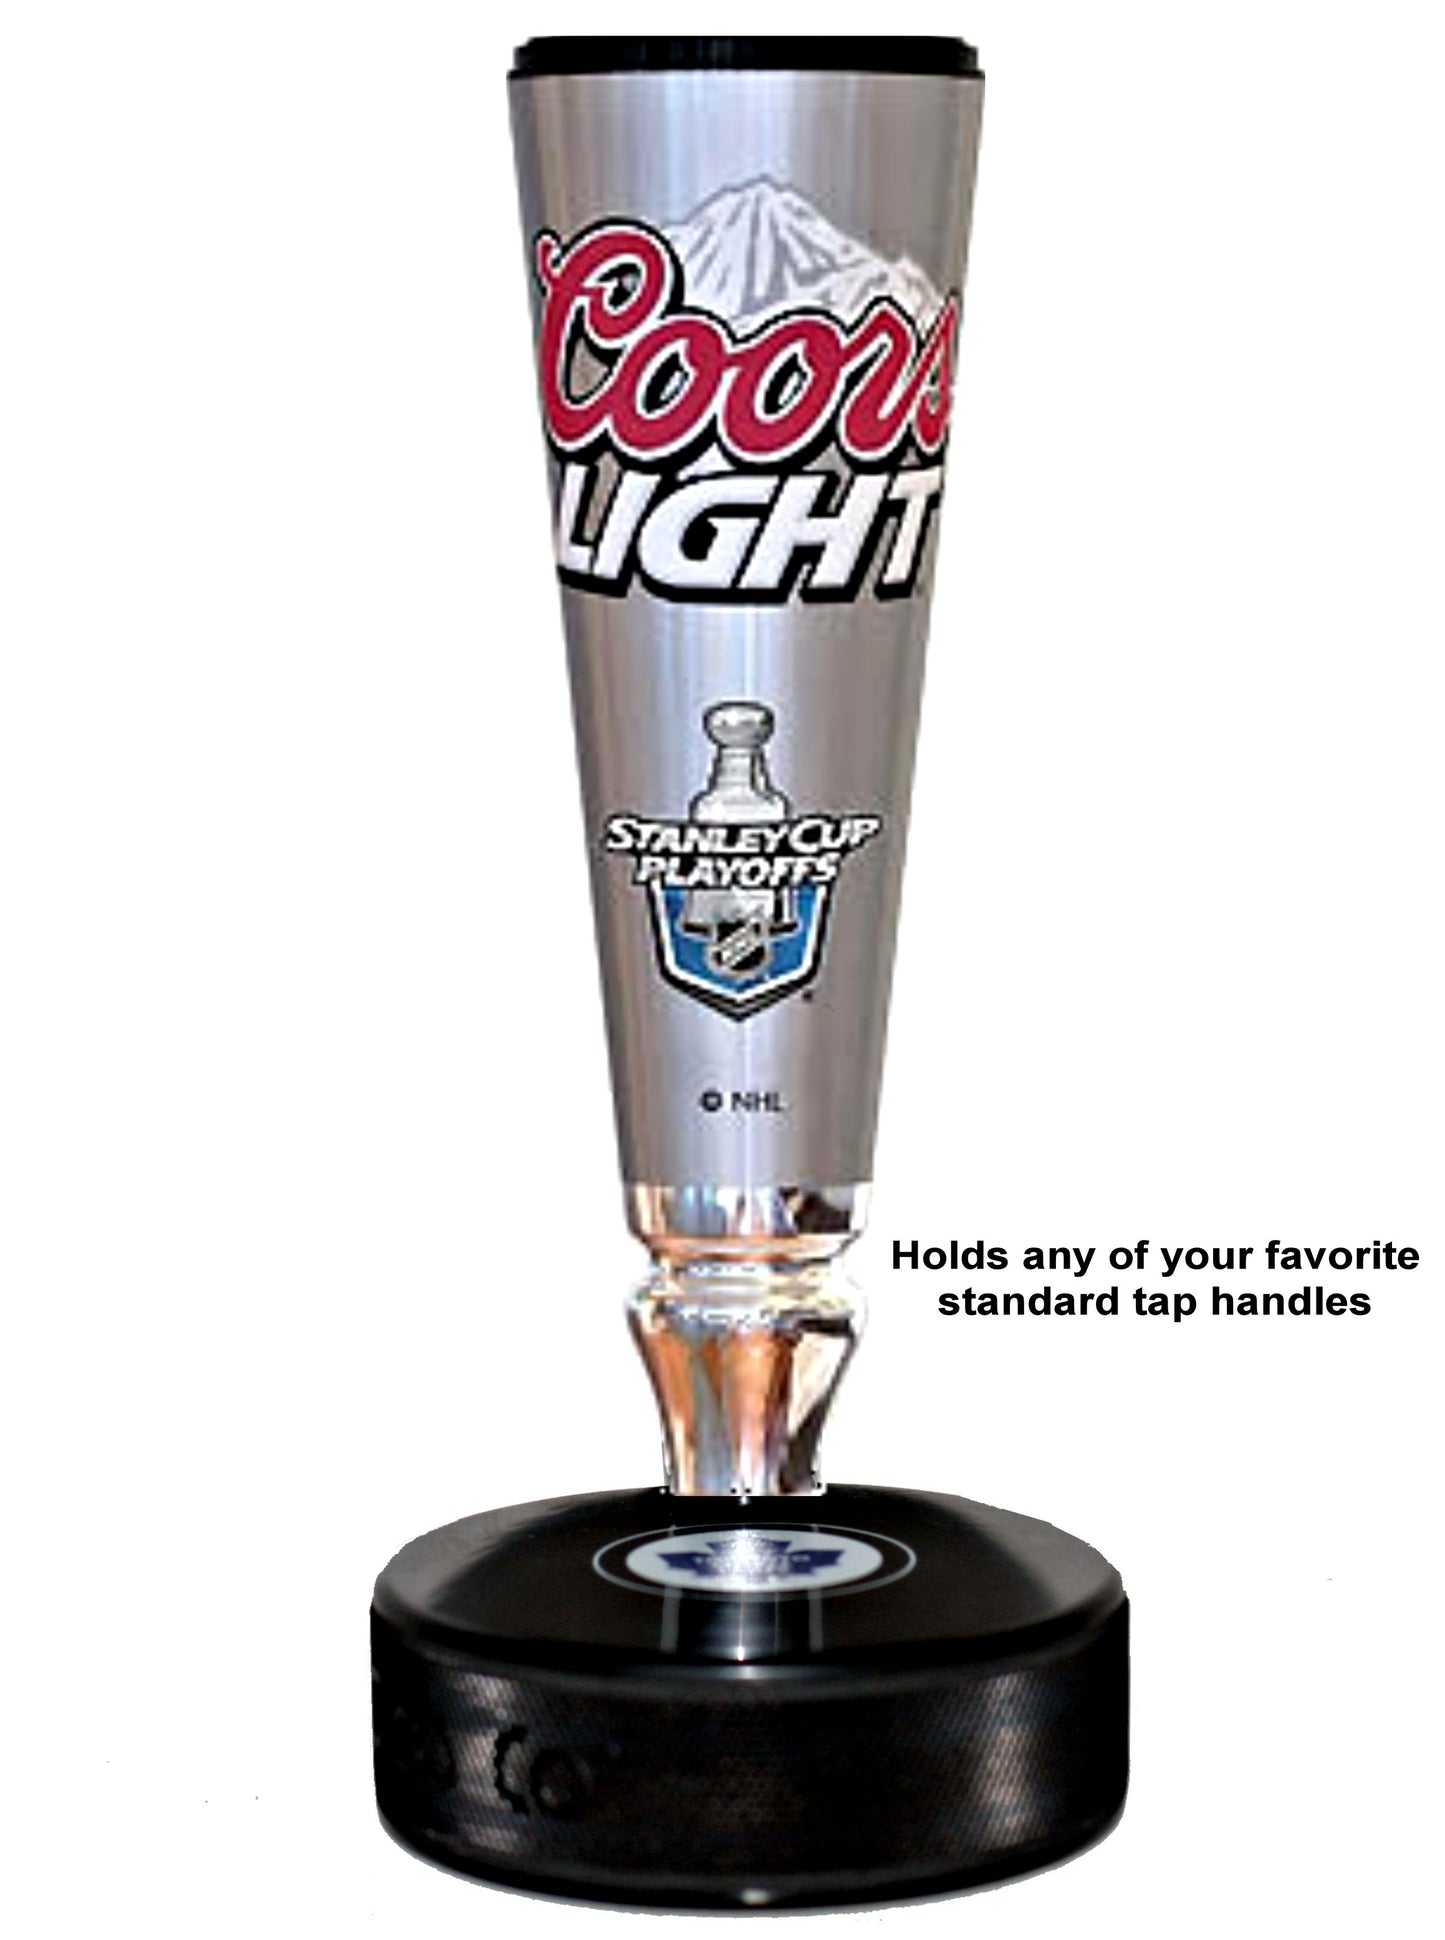 New York Rangers Hockey Puck Beer Tap Handle Display